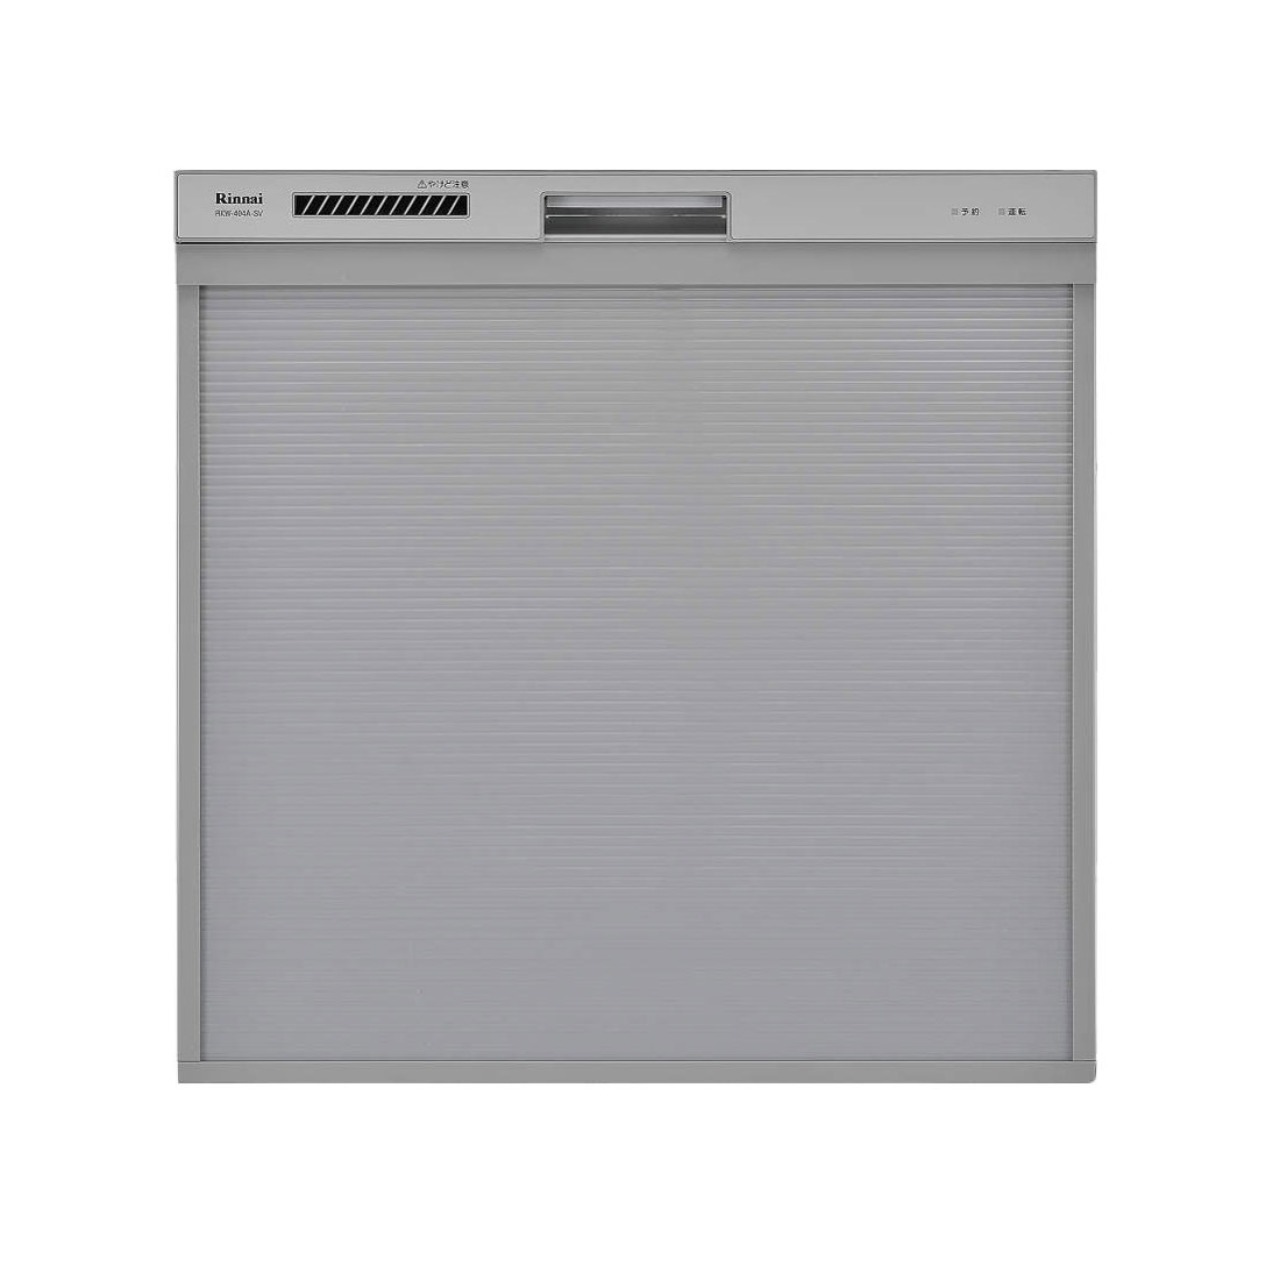 リンナイRKW-404Aビルトイン食器洗い乾燥機